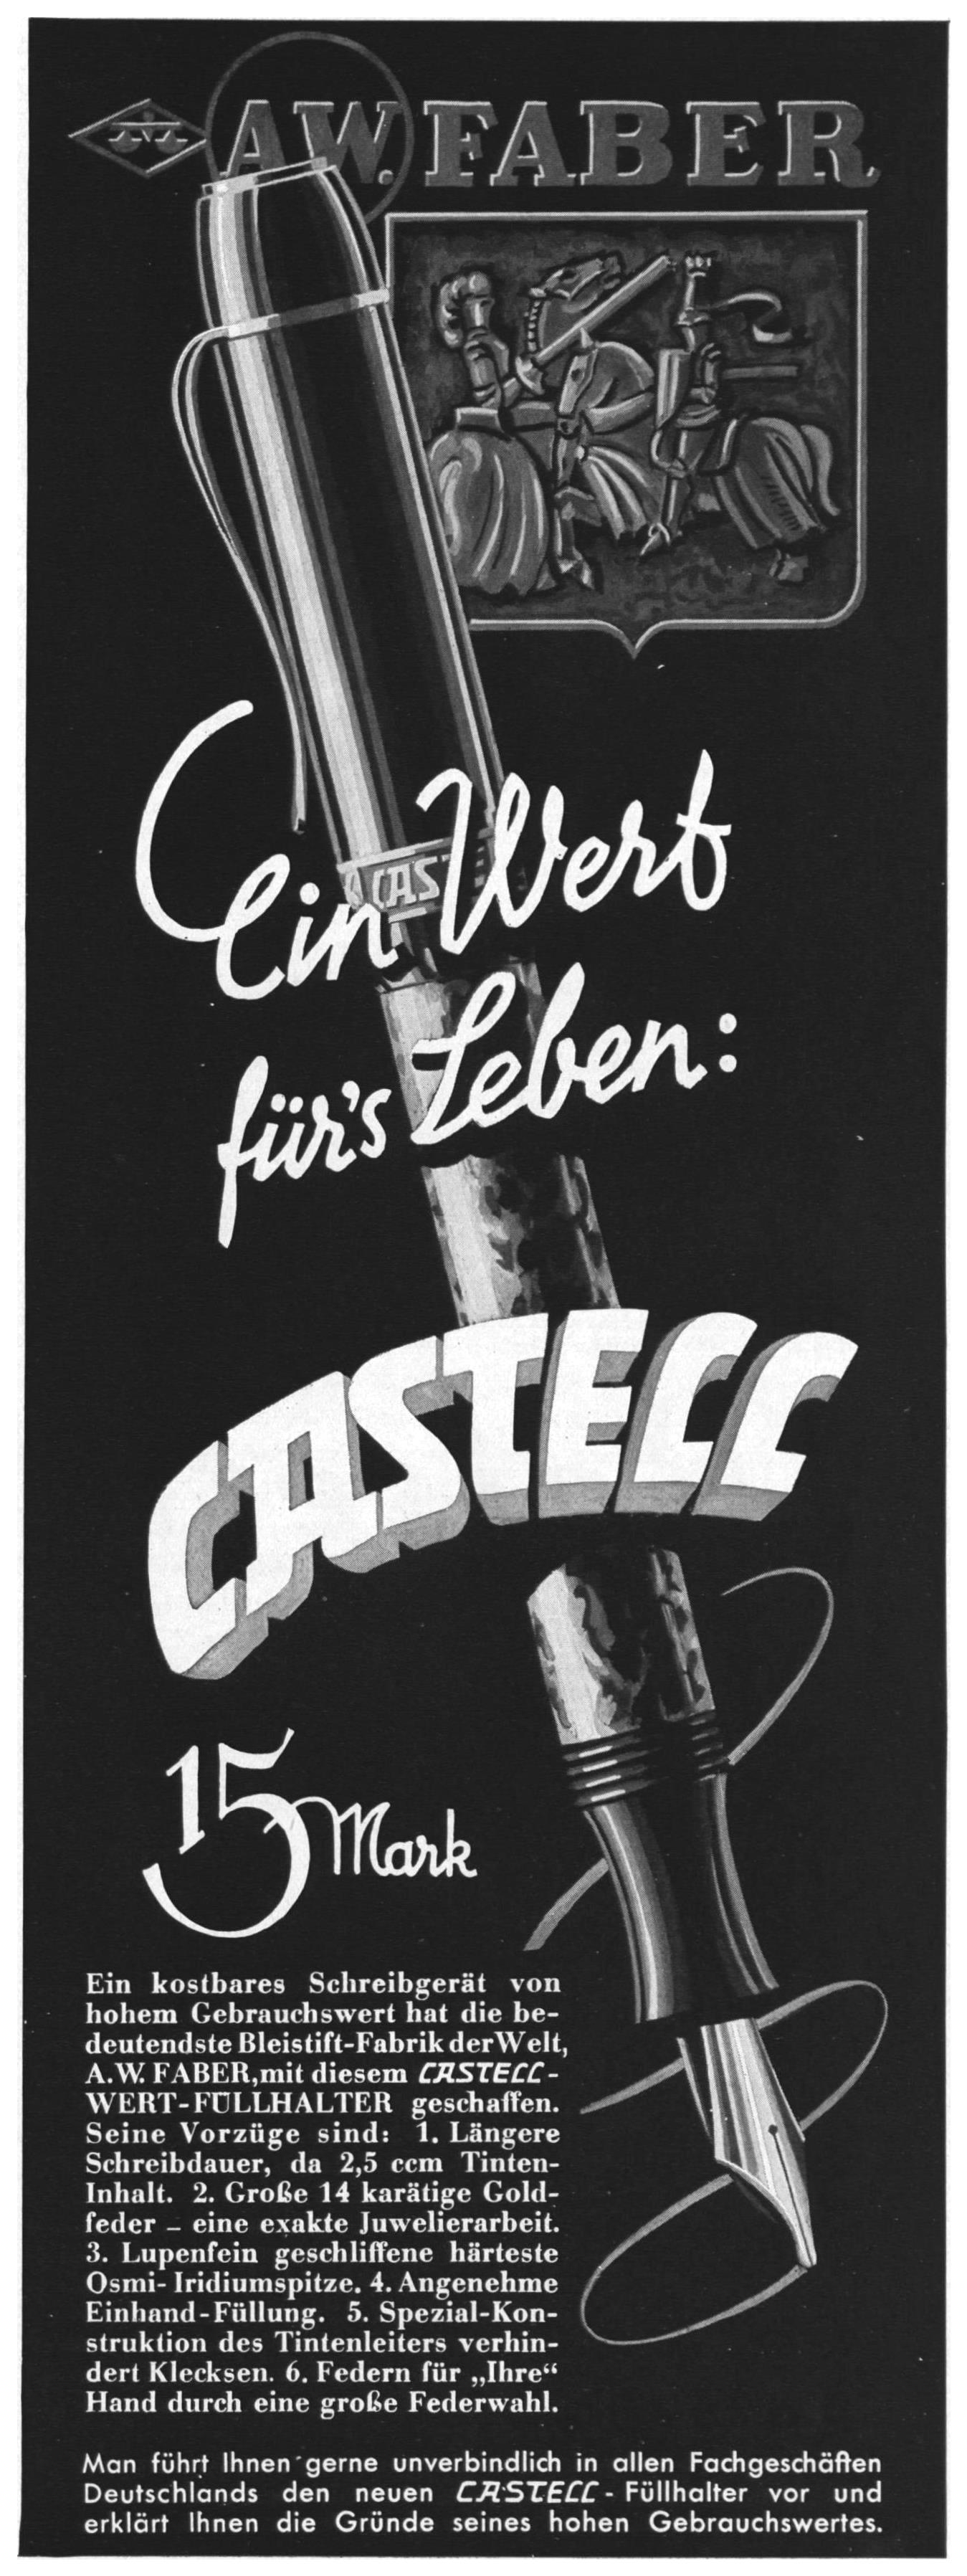 Castell 1935 0.jpg